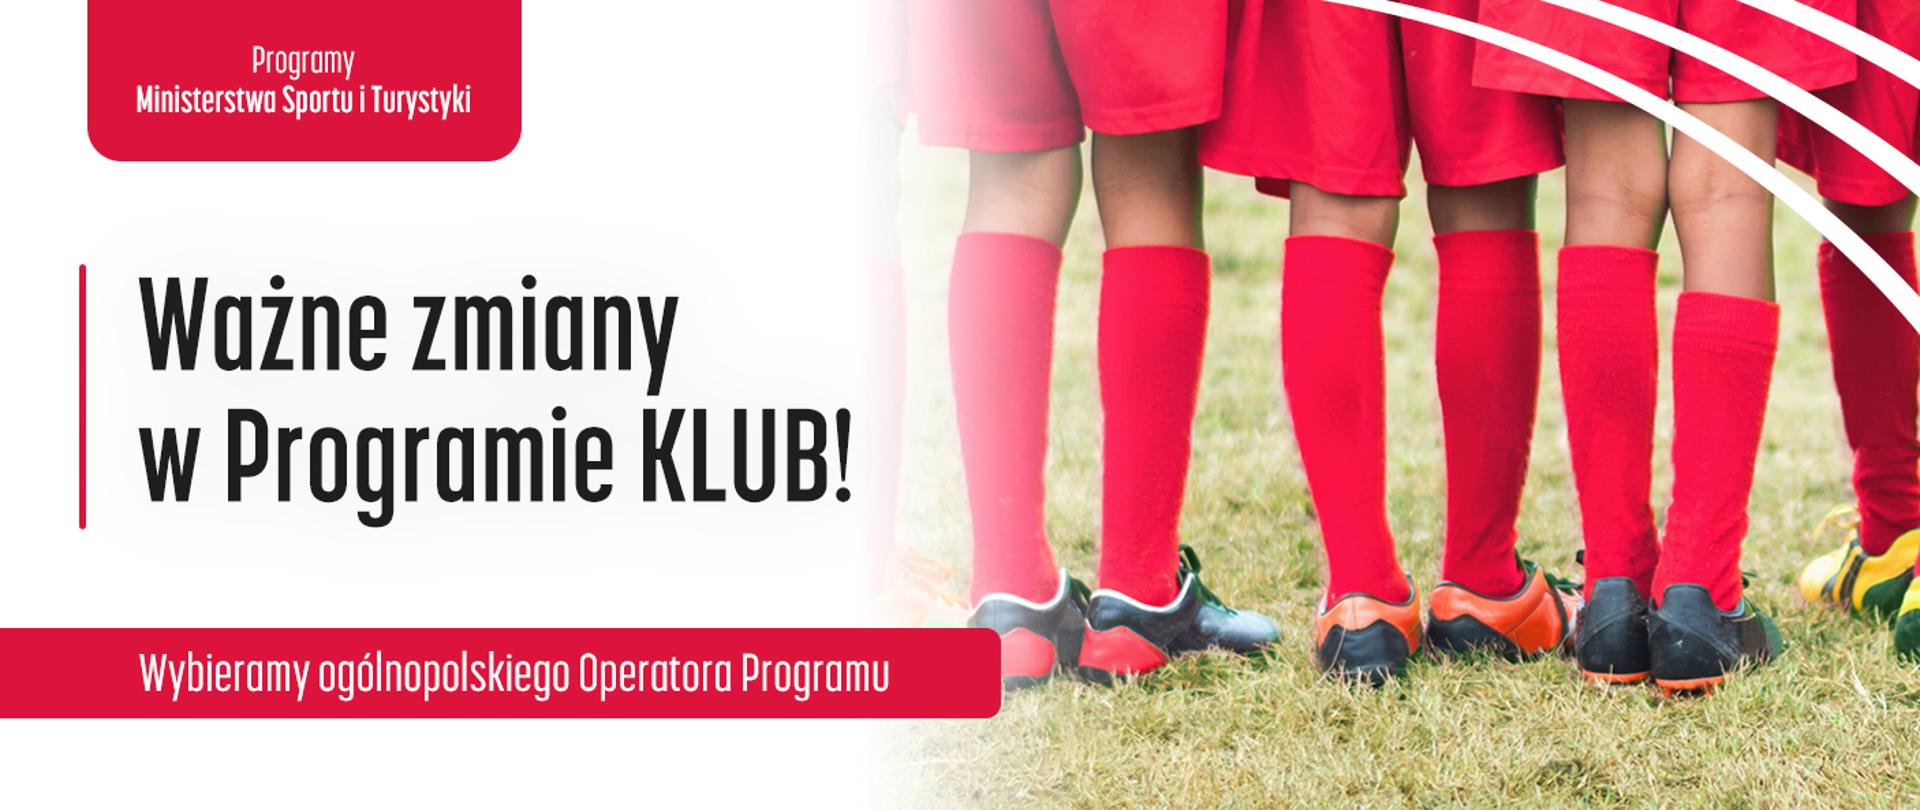 Ważne zmiany w Programie KLUB - wybieramy ogólnopolskiego Operatora Programu